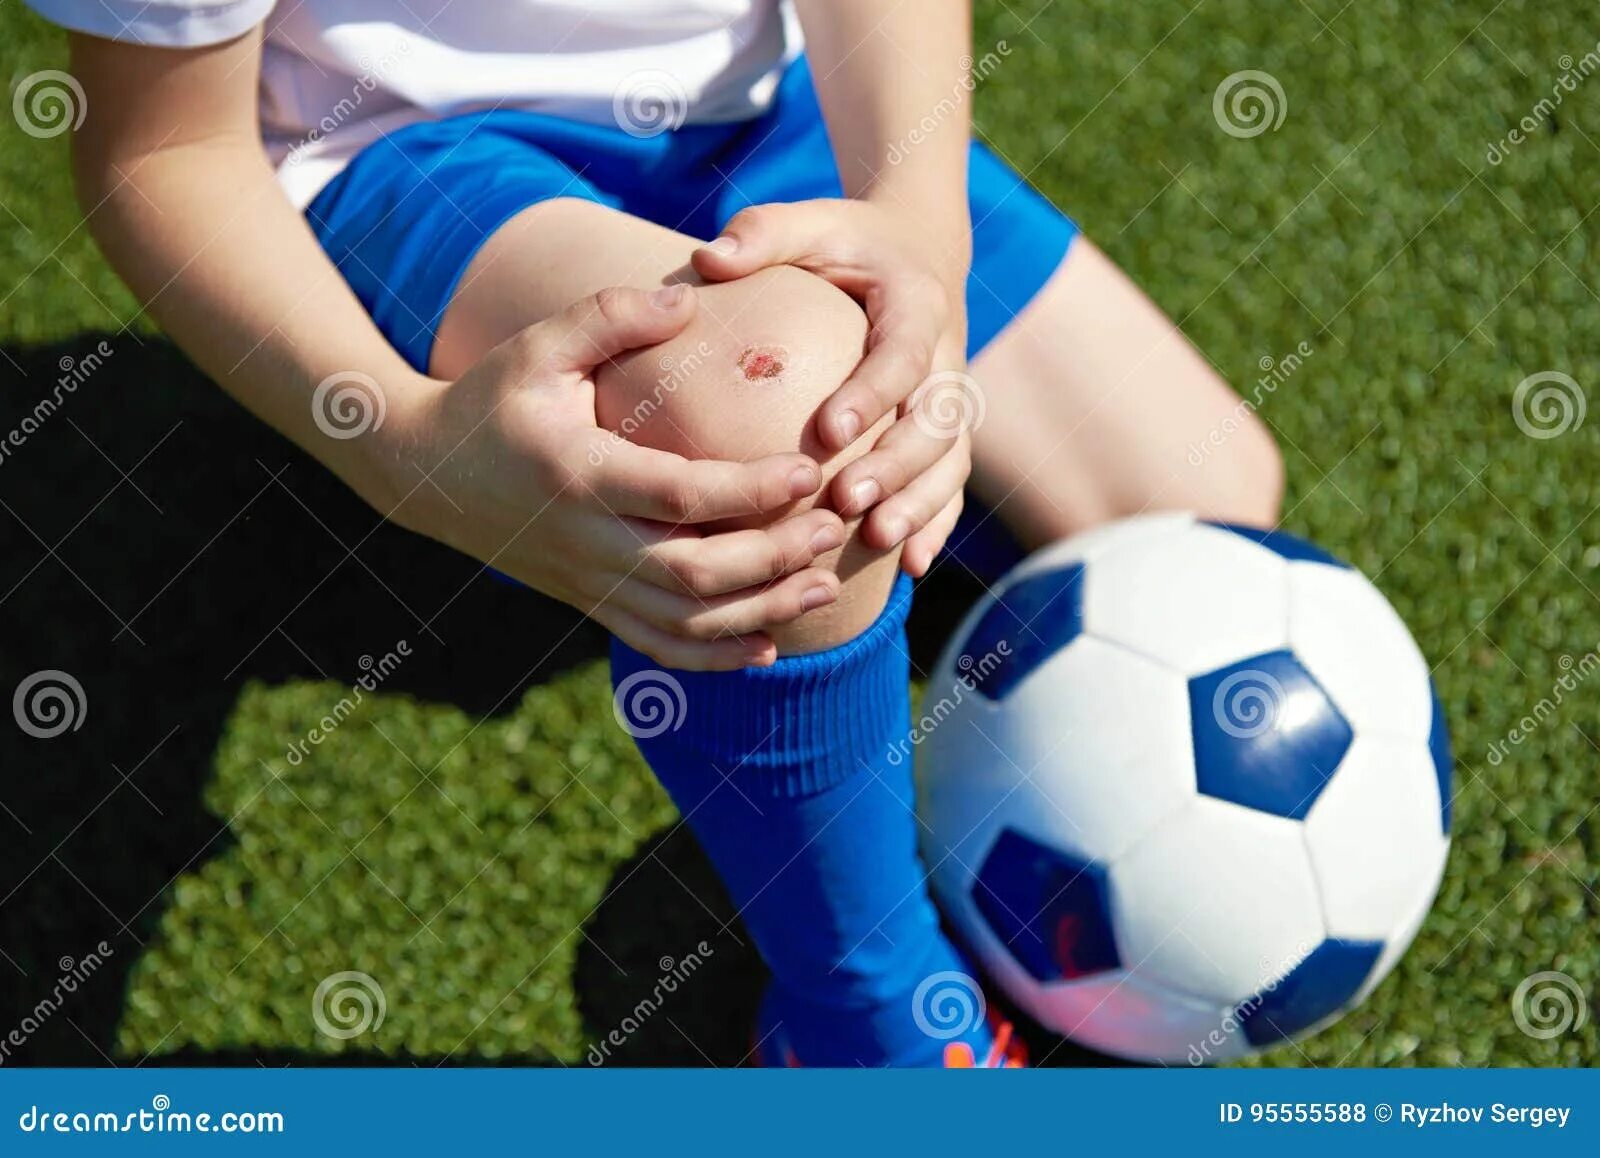 Детский футбол травмы. После футбола болит